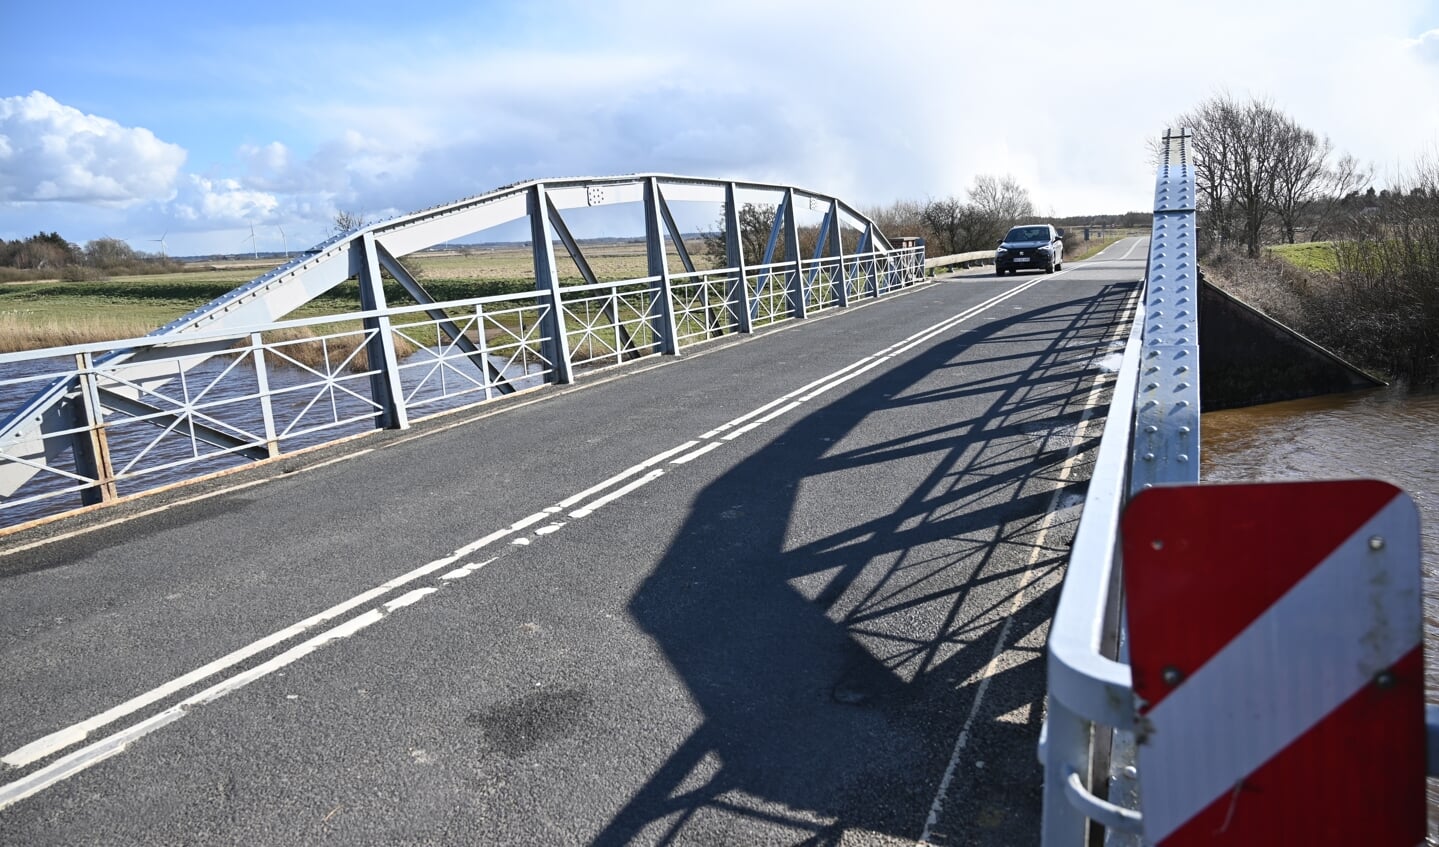 Broen ved Lægan kan under den forestående renovering erstattes af en midlertidig bro, som Tønder Kommune kan låne hos forsvaret. Den samlede udgift til den foranstaltning er budgetteret til 2,5 millioner kroner. Foto: